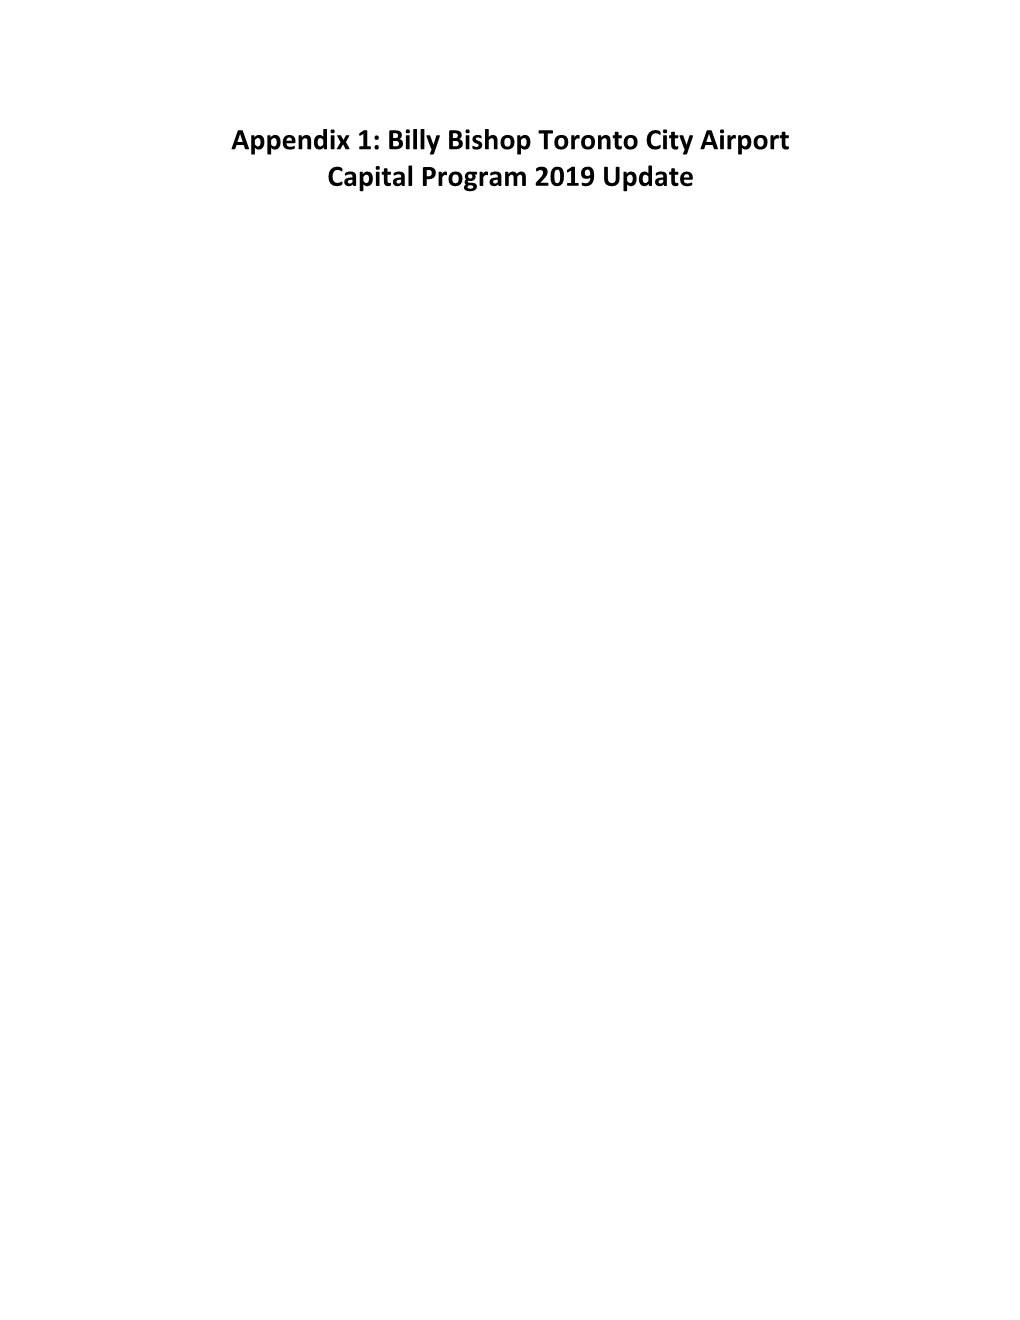 Appendix 1: Billy Bishop Toronto City Airport Capital Program 2019 Update